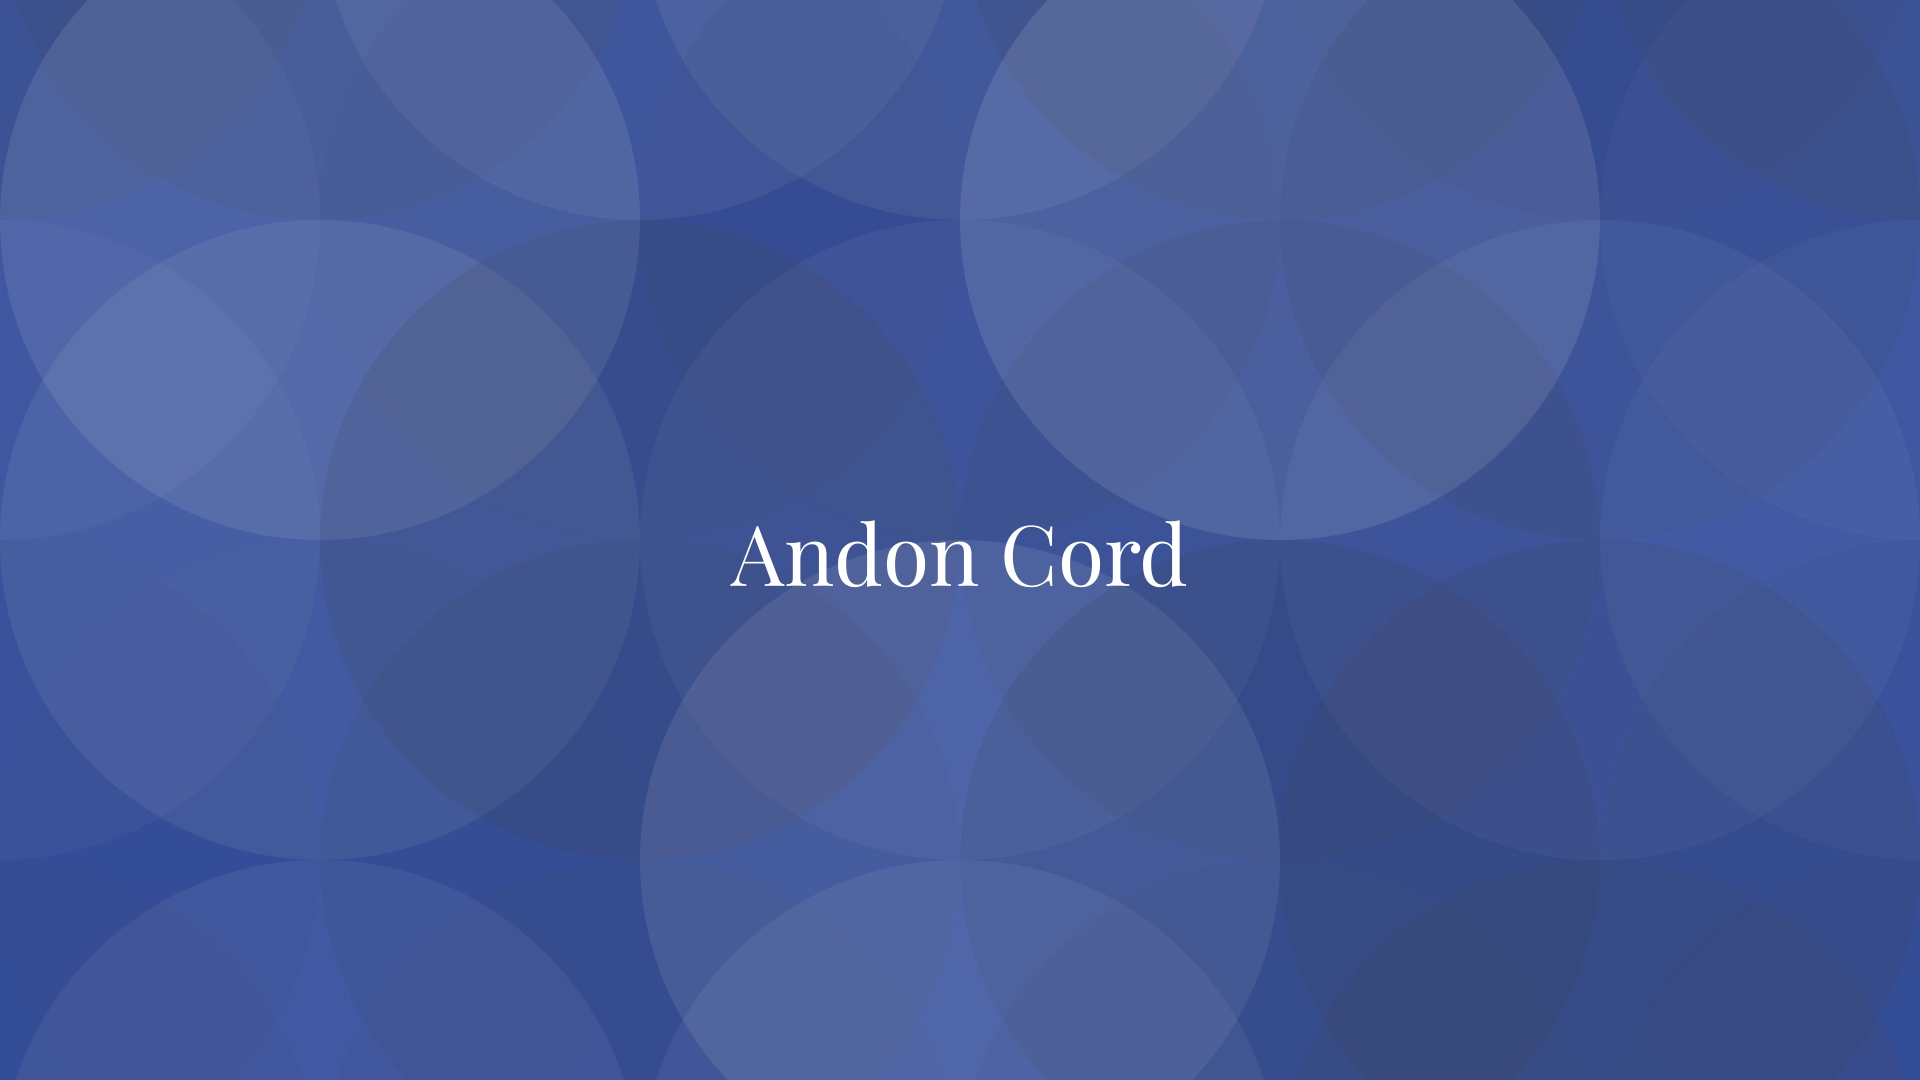 Andon Cord